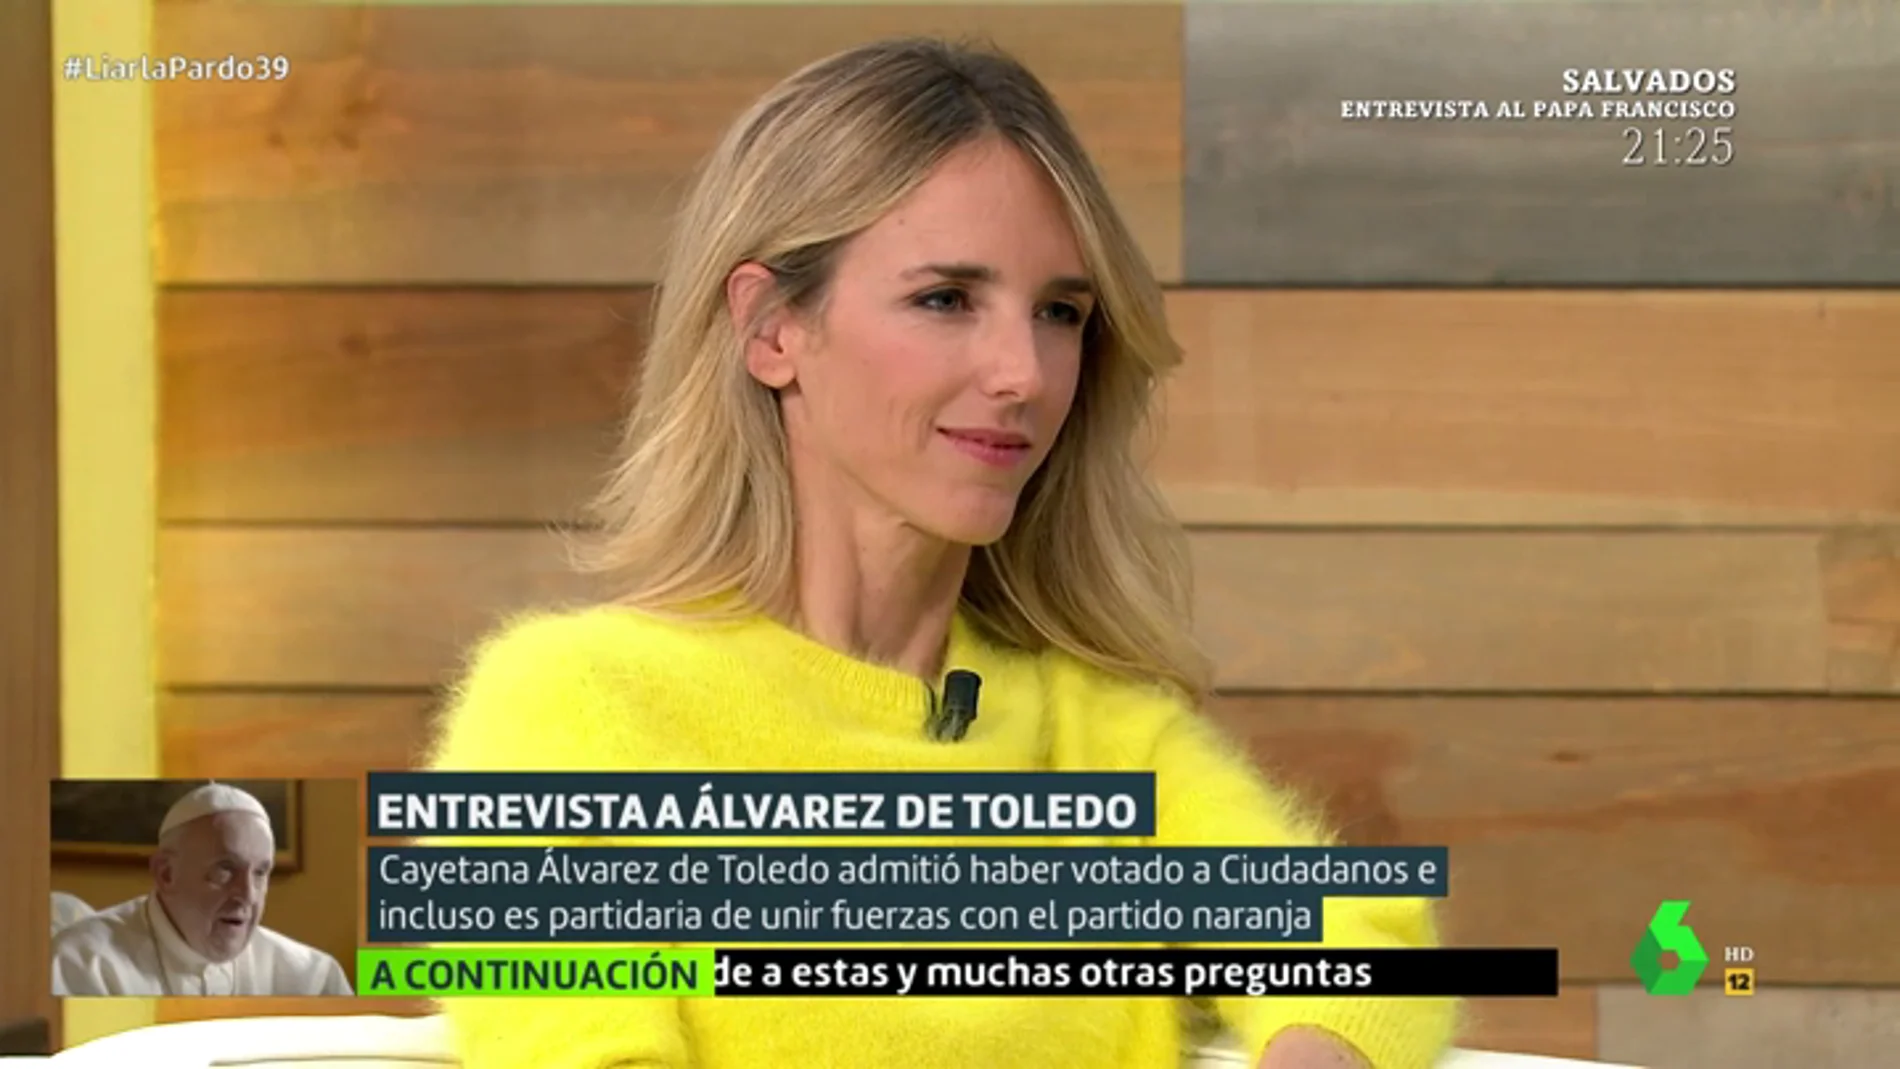 Tensión entre Cayetana Alvarez de Toledo y Cristina Pardo: "¿Usted quiere plantearle a Casado que me expediente mañana?